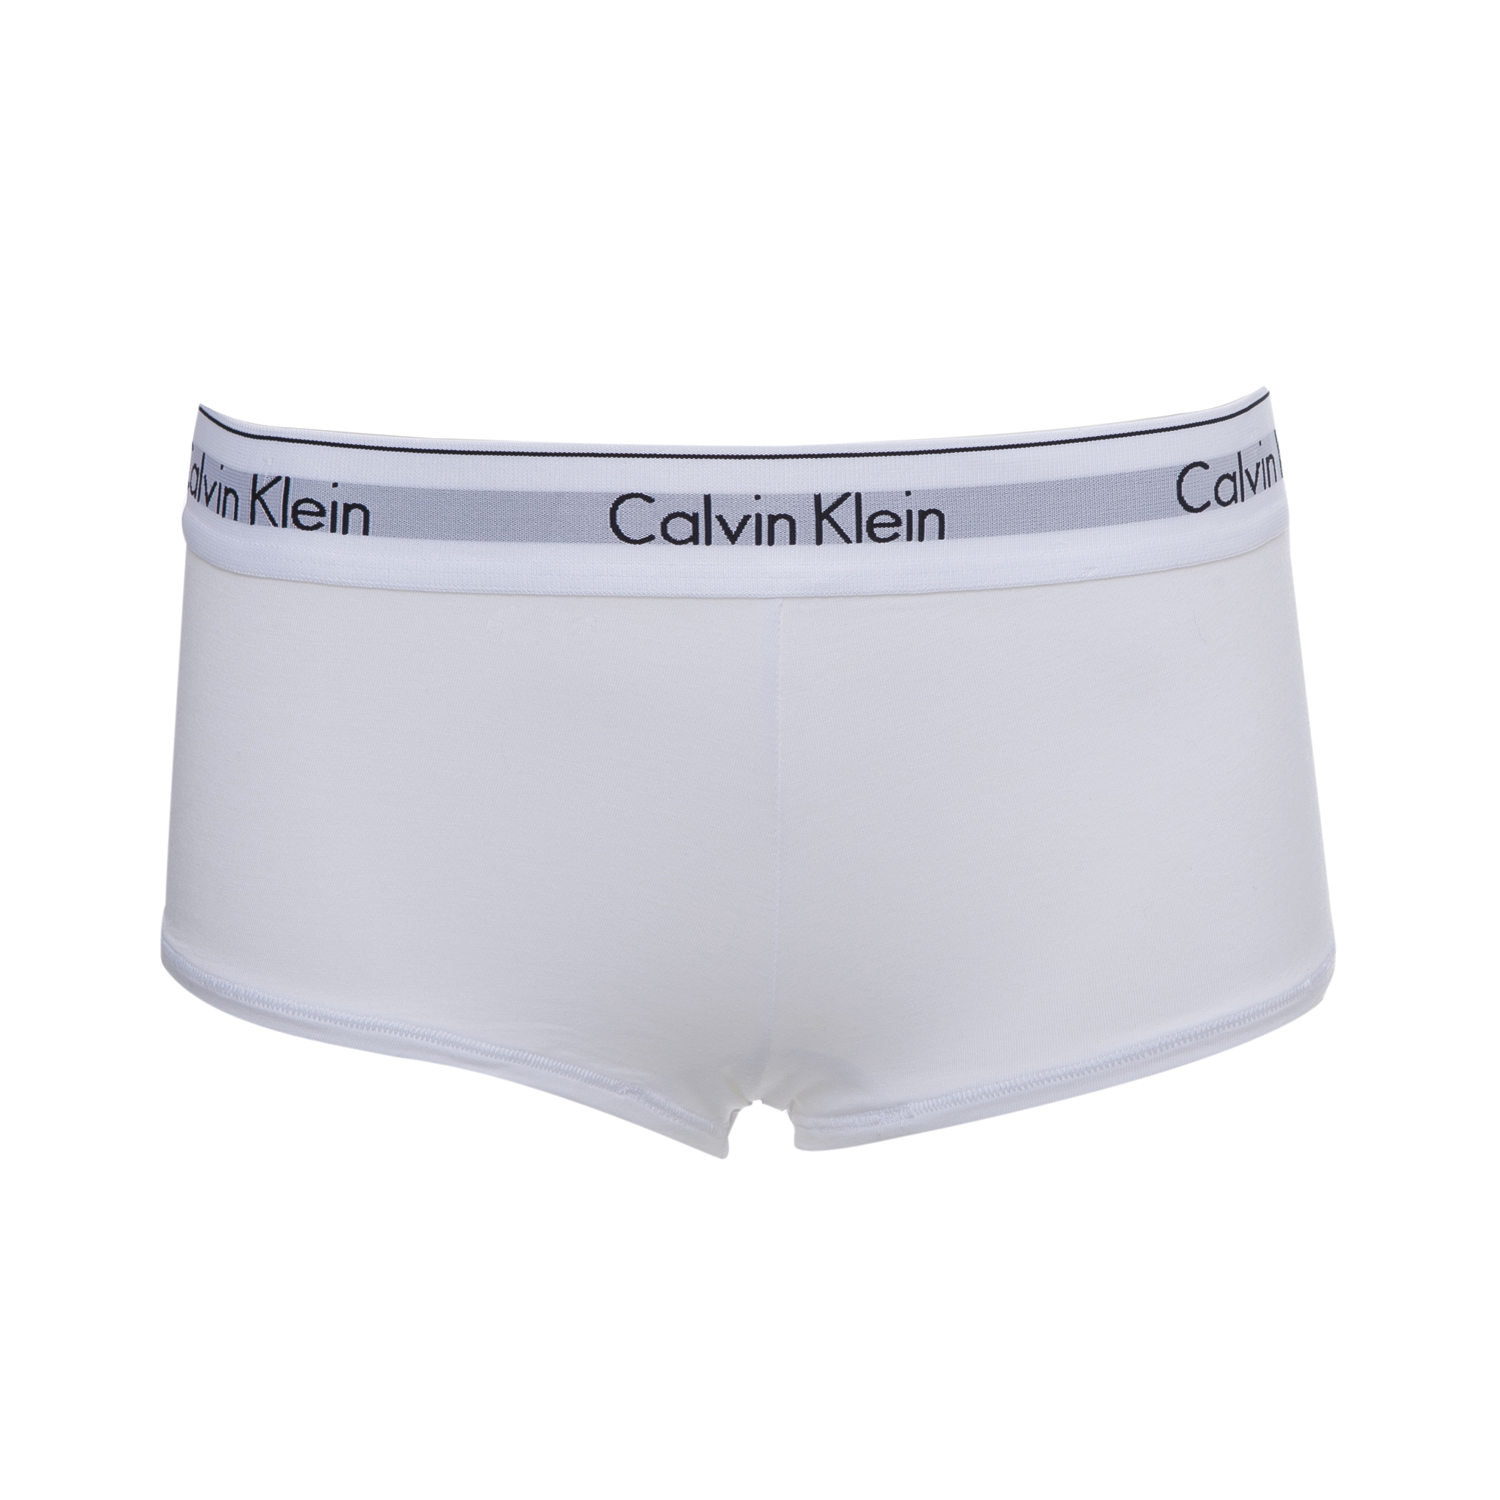 Γυναικεία/Ρούχα/Εσώρουχα/Σλιπ CK UNDERWEAR - Μπόξερ Calvin Klein λευκό